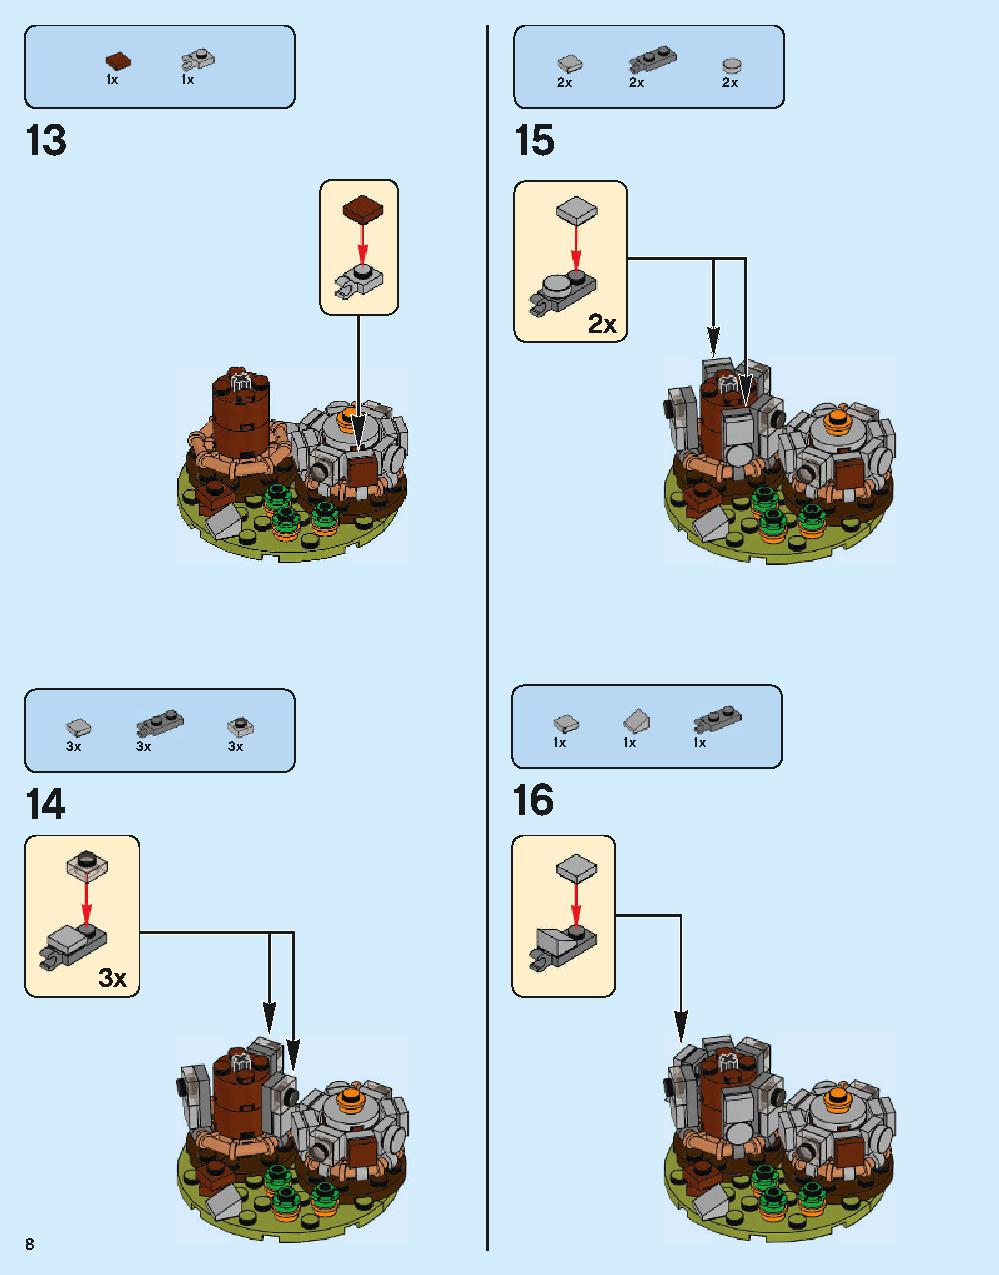 ホグワーツ城 71043 レゴの商品情報 レゴの説明書・組立方法 8 page